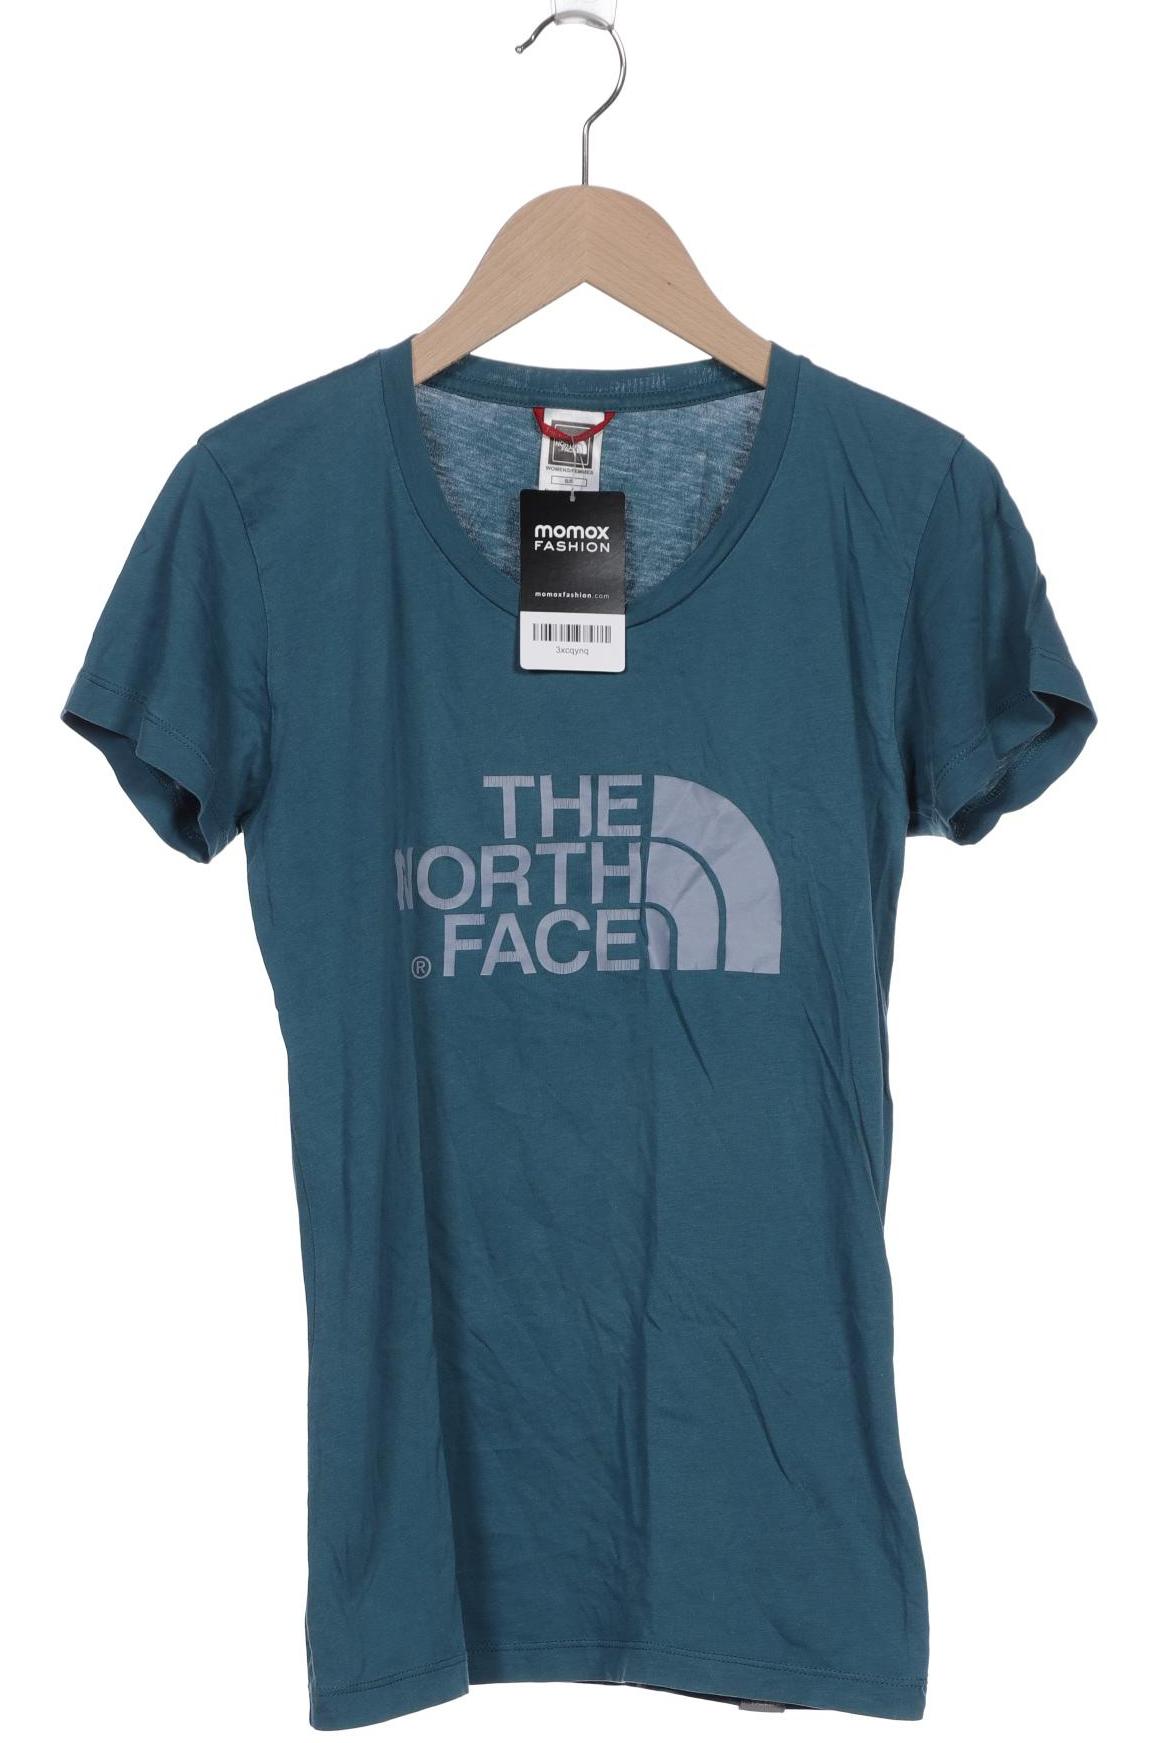 The North Face Herren T-Shirt, blau, Gr. 46 von The North Face